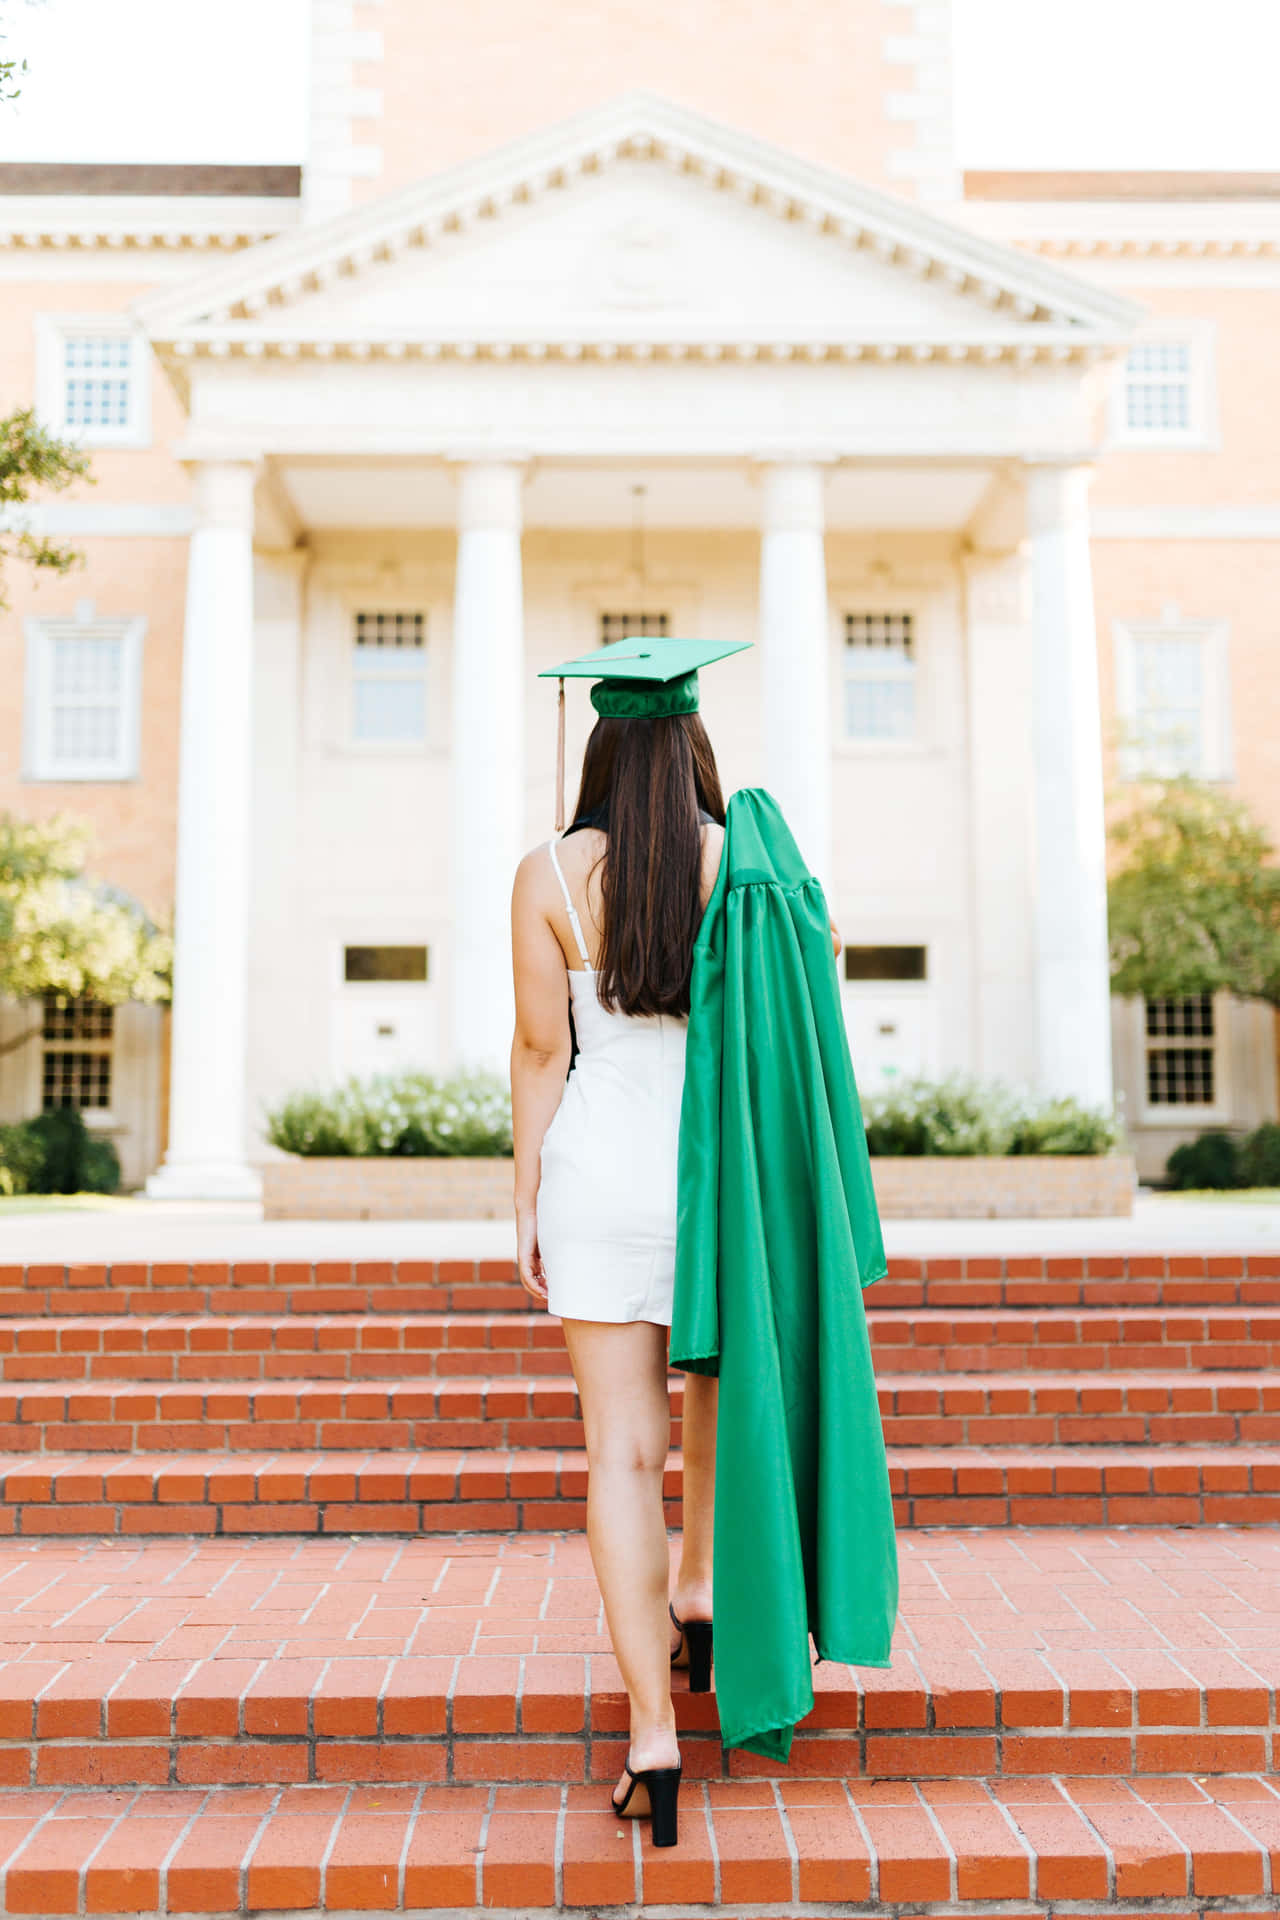 Imagende Una Chica Subiendo Las Escaleras En Su Graduación Universitaria.